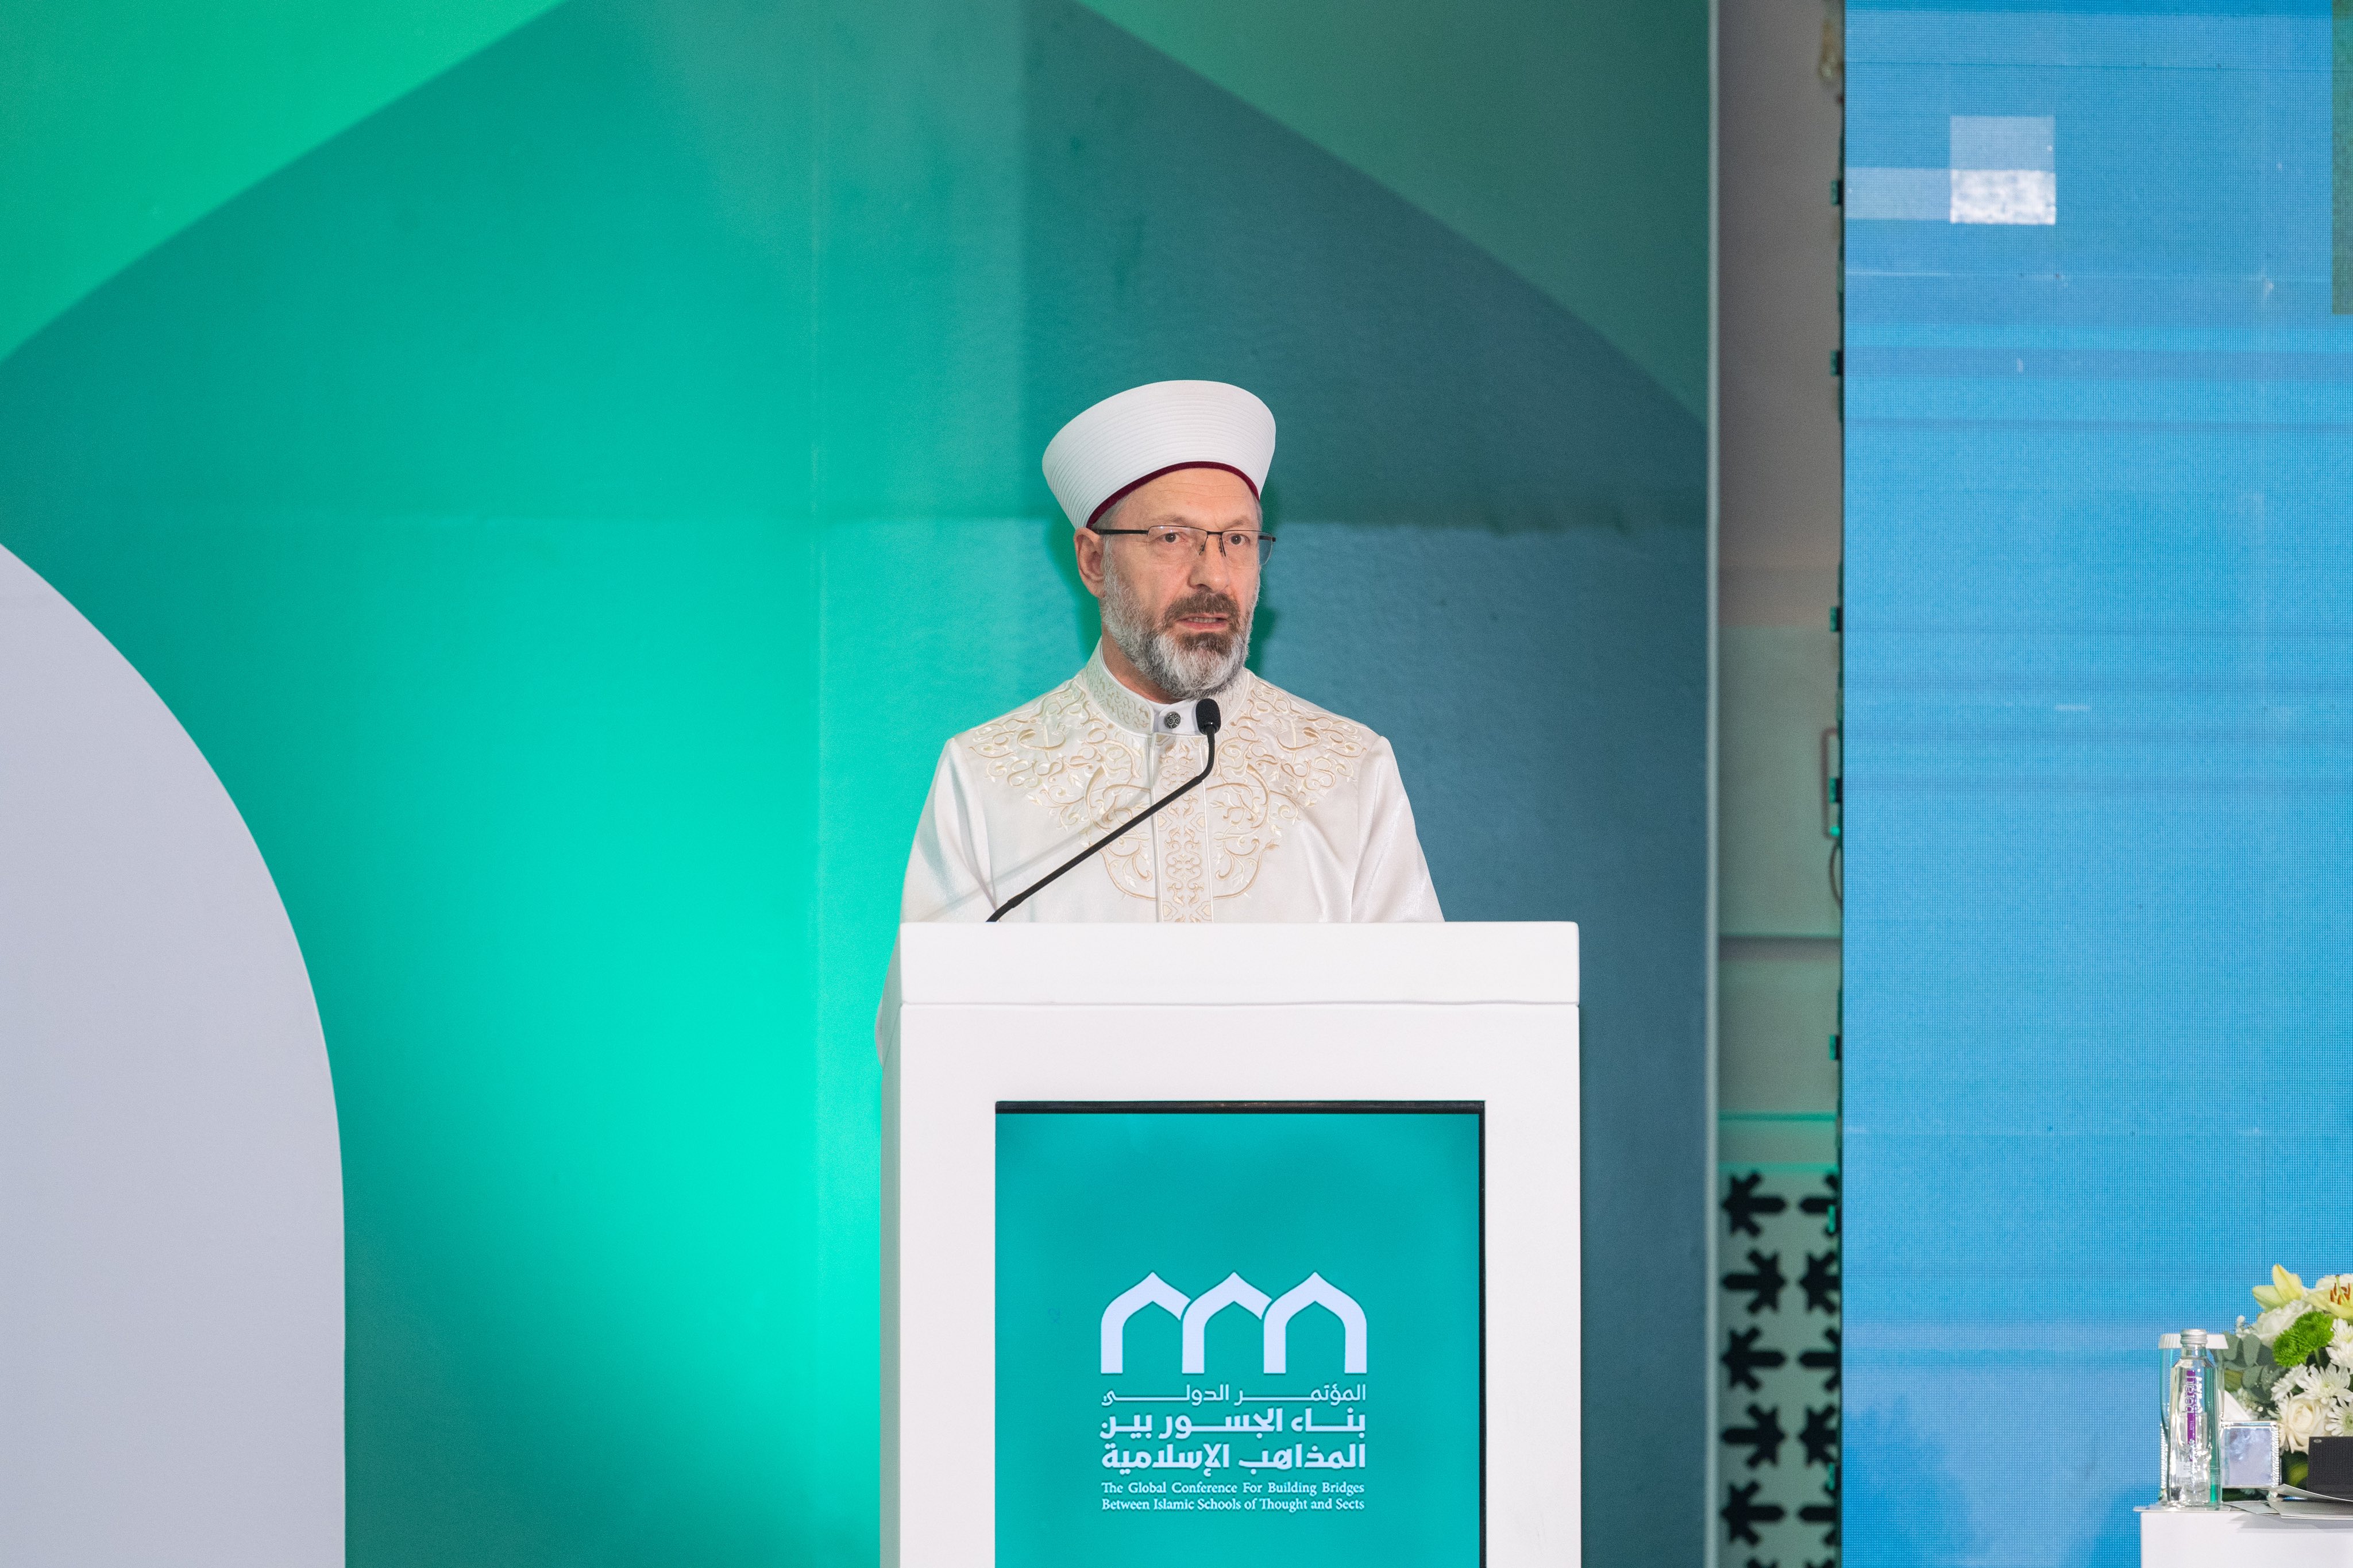 معالي رئيس الشؤون الدينية بجمهورية تركيا، الشيخ الدكتور علي بن عبدالرحمن أرباش، في كلمته في الجلسة الافتتاحية لمؤتمر: "بناء الجسور بين المذاهب الإسلامية"